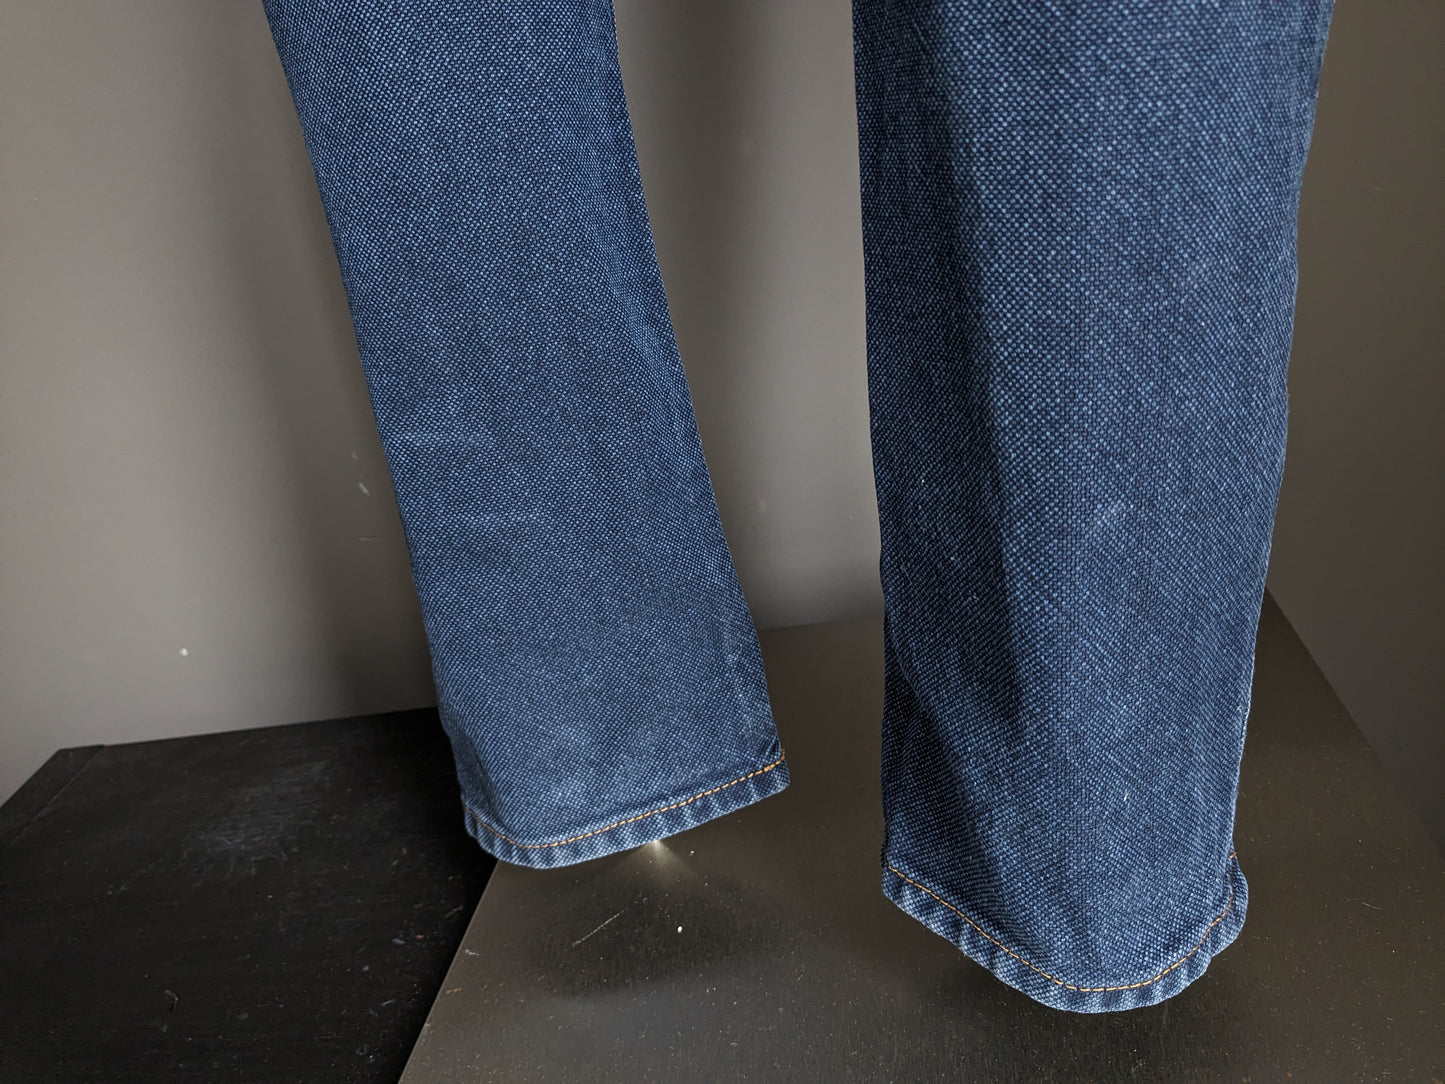 PT05 Jeans. Blau gemischt. Größe W30 - L36.